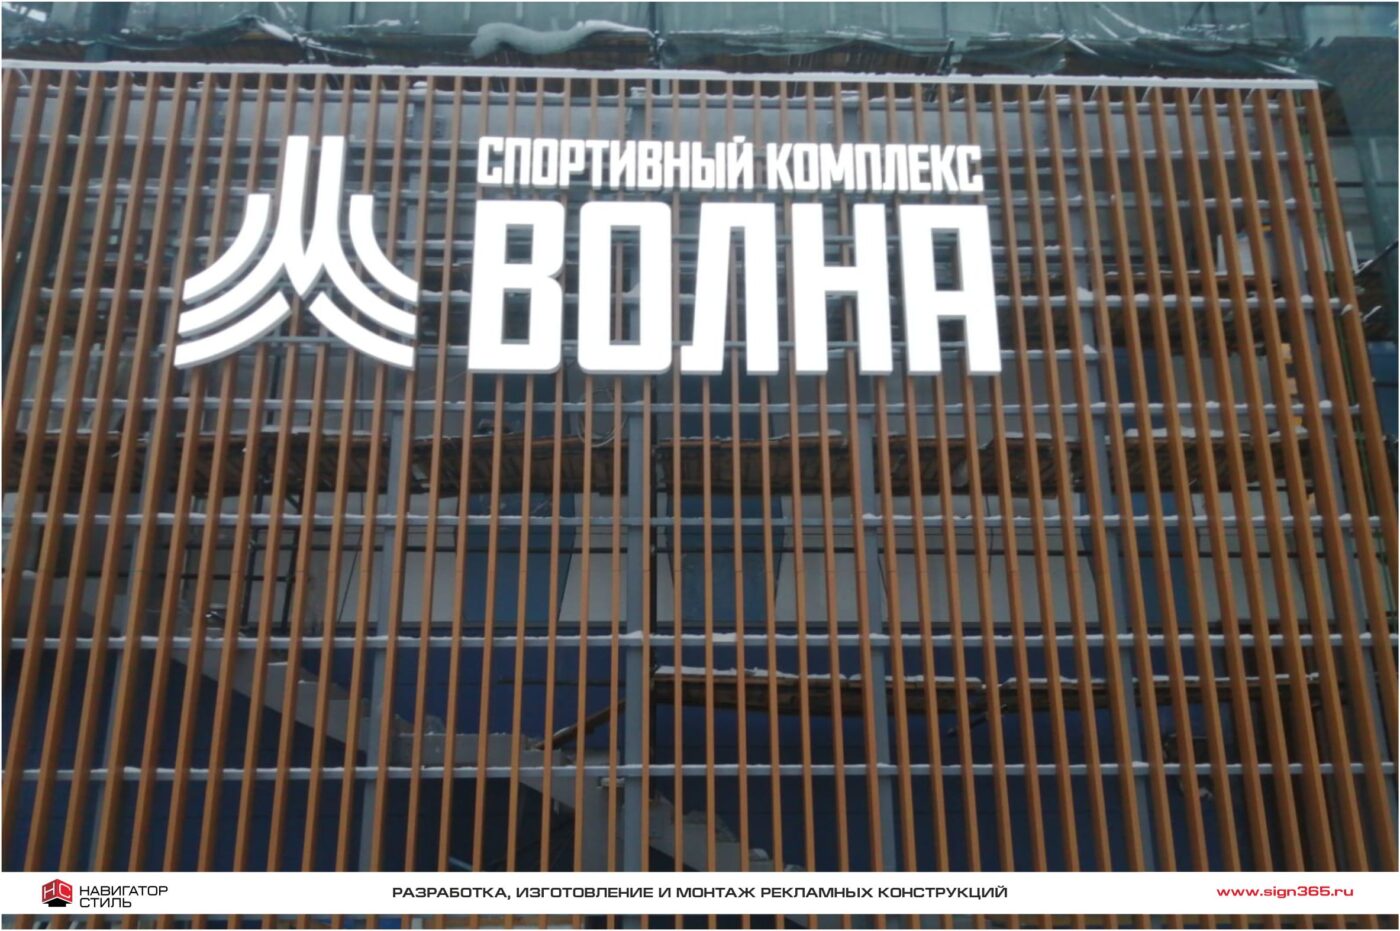 Фасадная рекламная конструкция в виде световых объёмных букв и логотипа для Спортивного комплекса Волна.